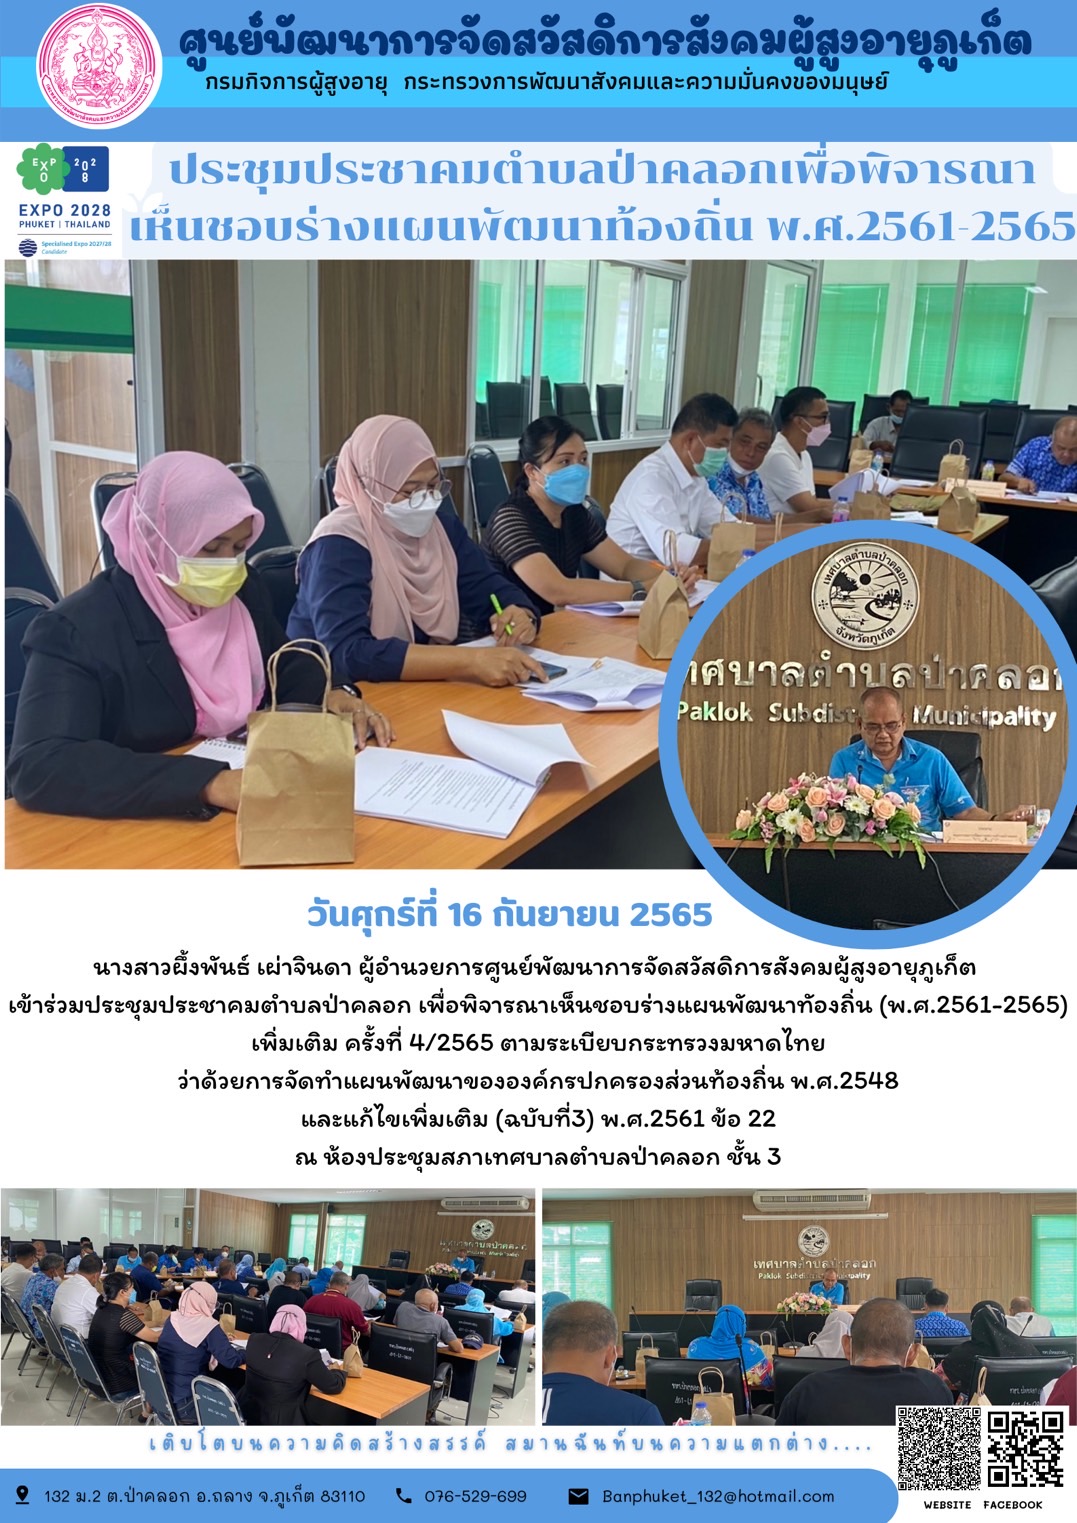 ศพส.ภูเก็ต เข้าร่วมประชุมประชาคมตำบลป่าคลอก เพื่อพิจารณาเห็นชอบร่างแผนพัฒนาทัองถิ่น (พ.ศ.2561-2565) เพิ่มเติม ครั้งที่ 4/2565 ตามระเบียบกระทรวงมหาดไทย  ว่าด้วยการจัดทำแผนพัฒนาขององค์กรปกครองส่วนท้องถิ